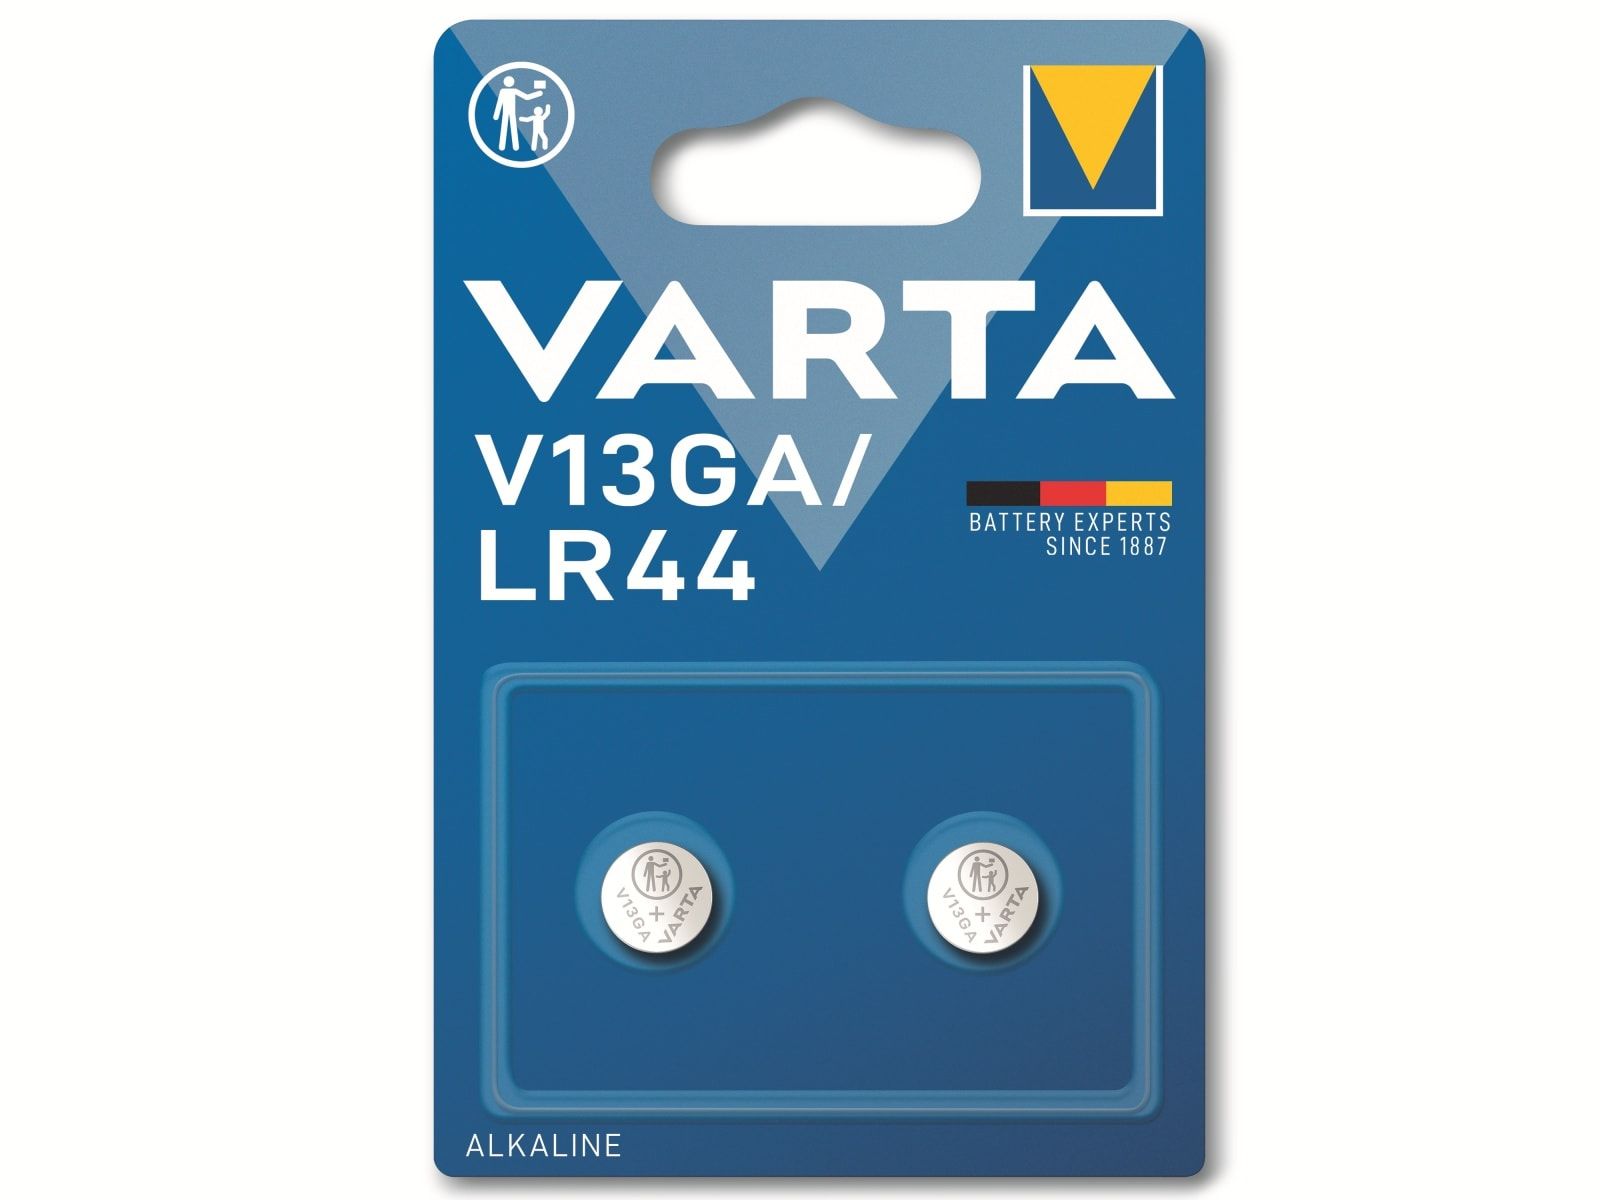 VARTA Knopfzelle Alkaline, LR44, 1.5V V13GA, 1.5V, 2 Stück von Varta